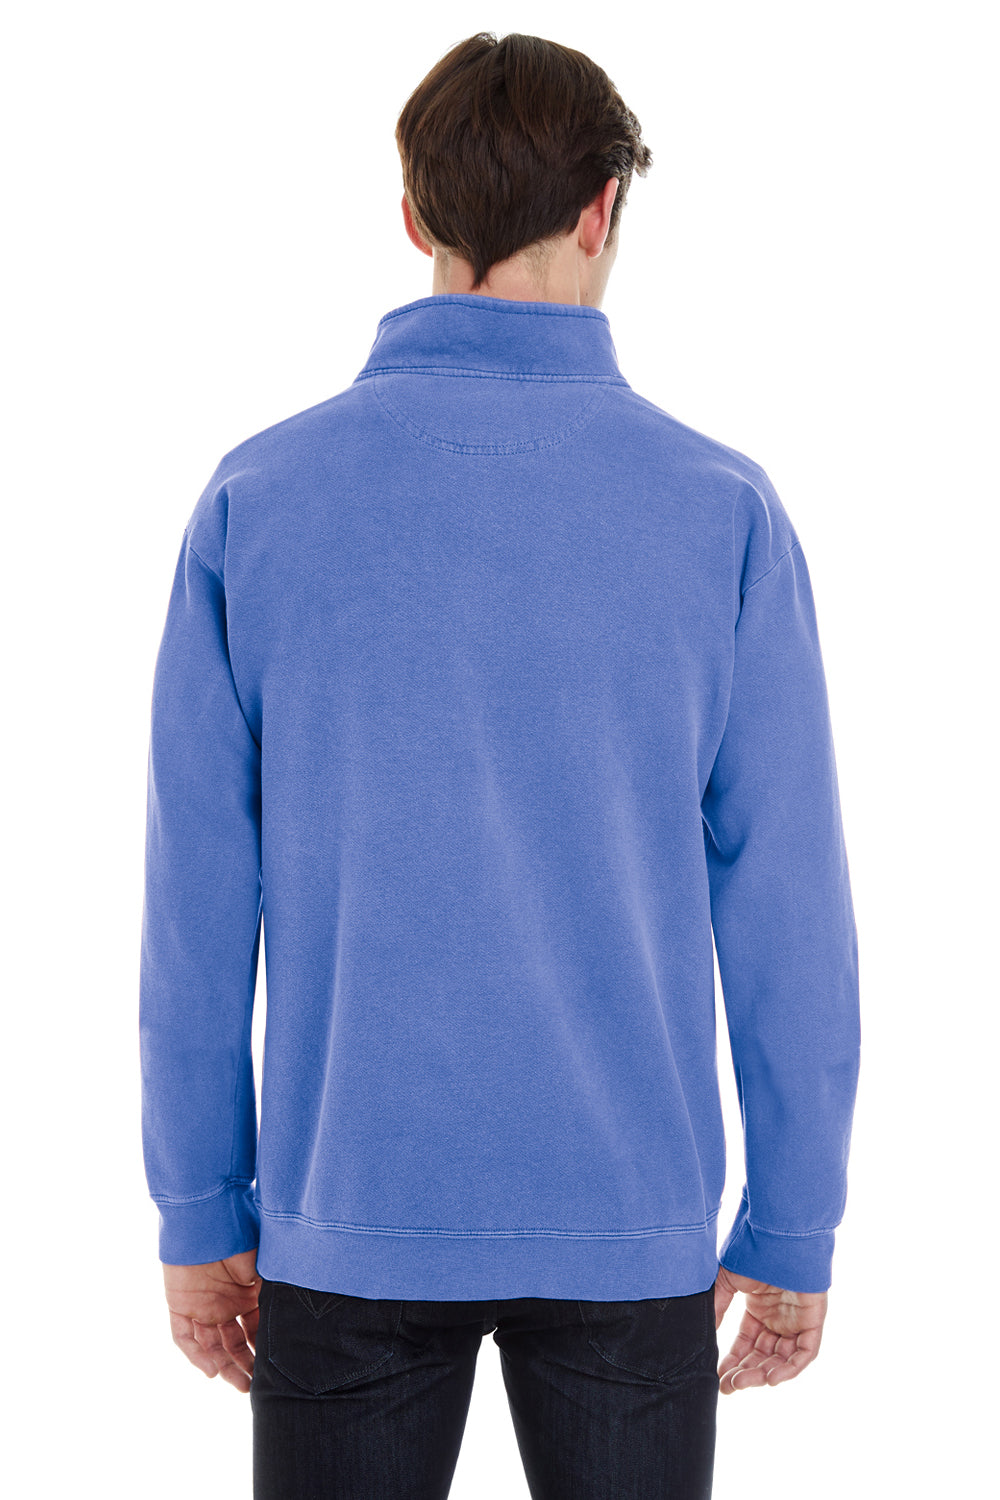 Comfort Colors 1580 Mens 1/4 Zip Sweatshirt Flo Blue Back